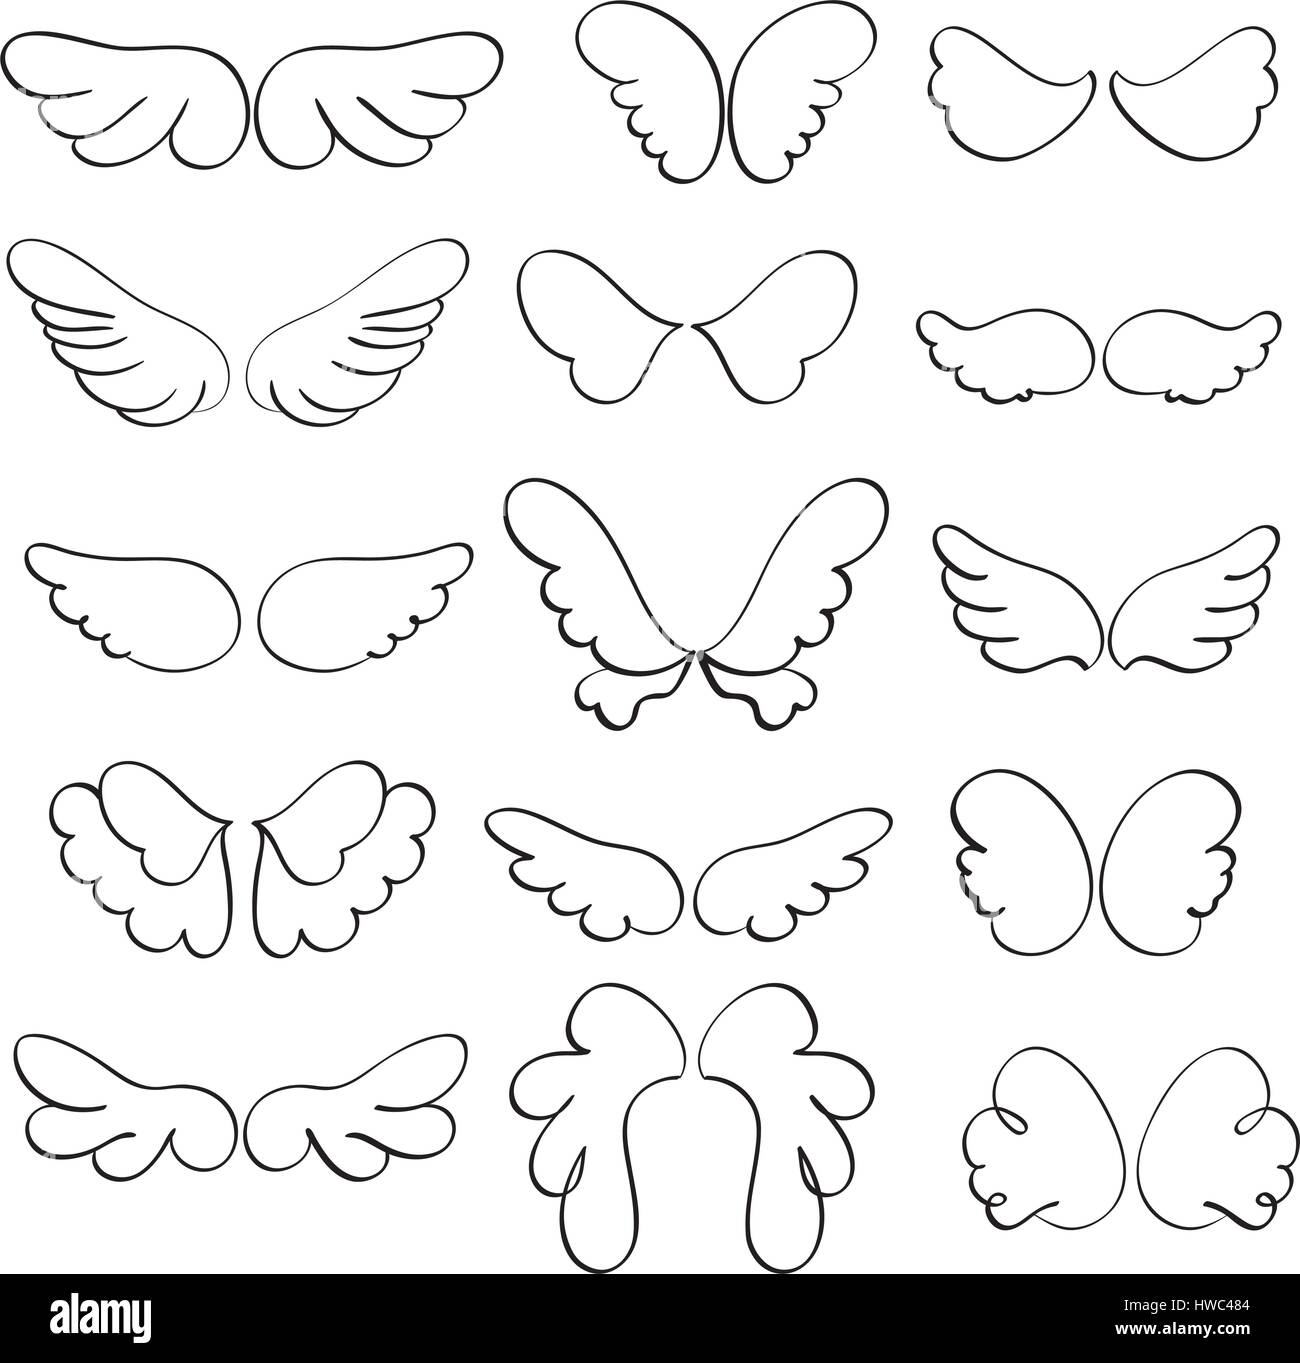 Ensemble d'ailes d'ange sur un fond blanc. EPS10 Vector illustration calligraphie Illustration de Vecteur